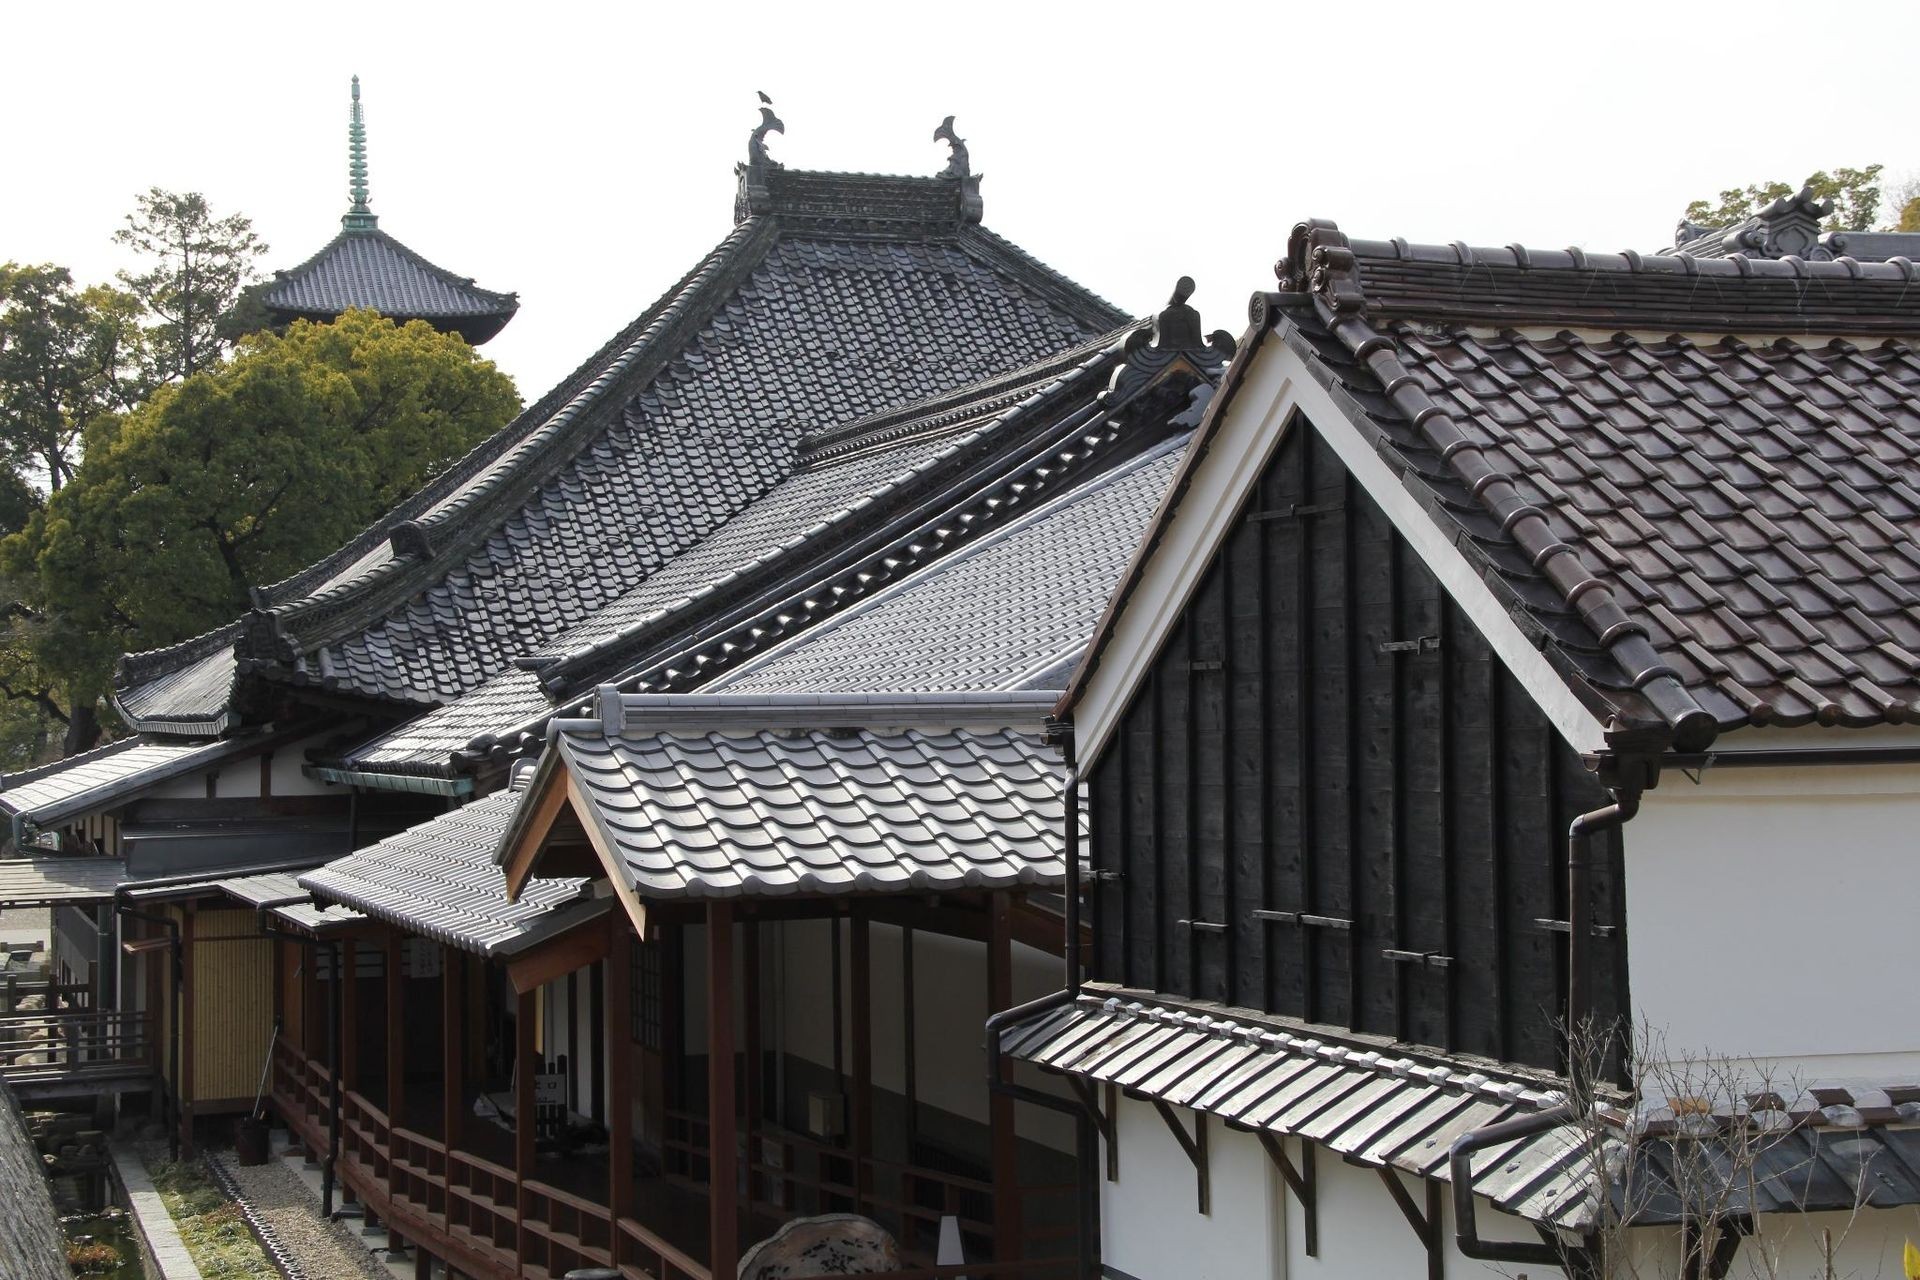 兴正寺(Kōshō-ji)